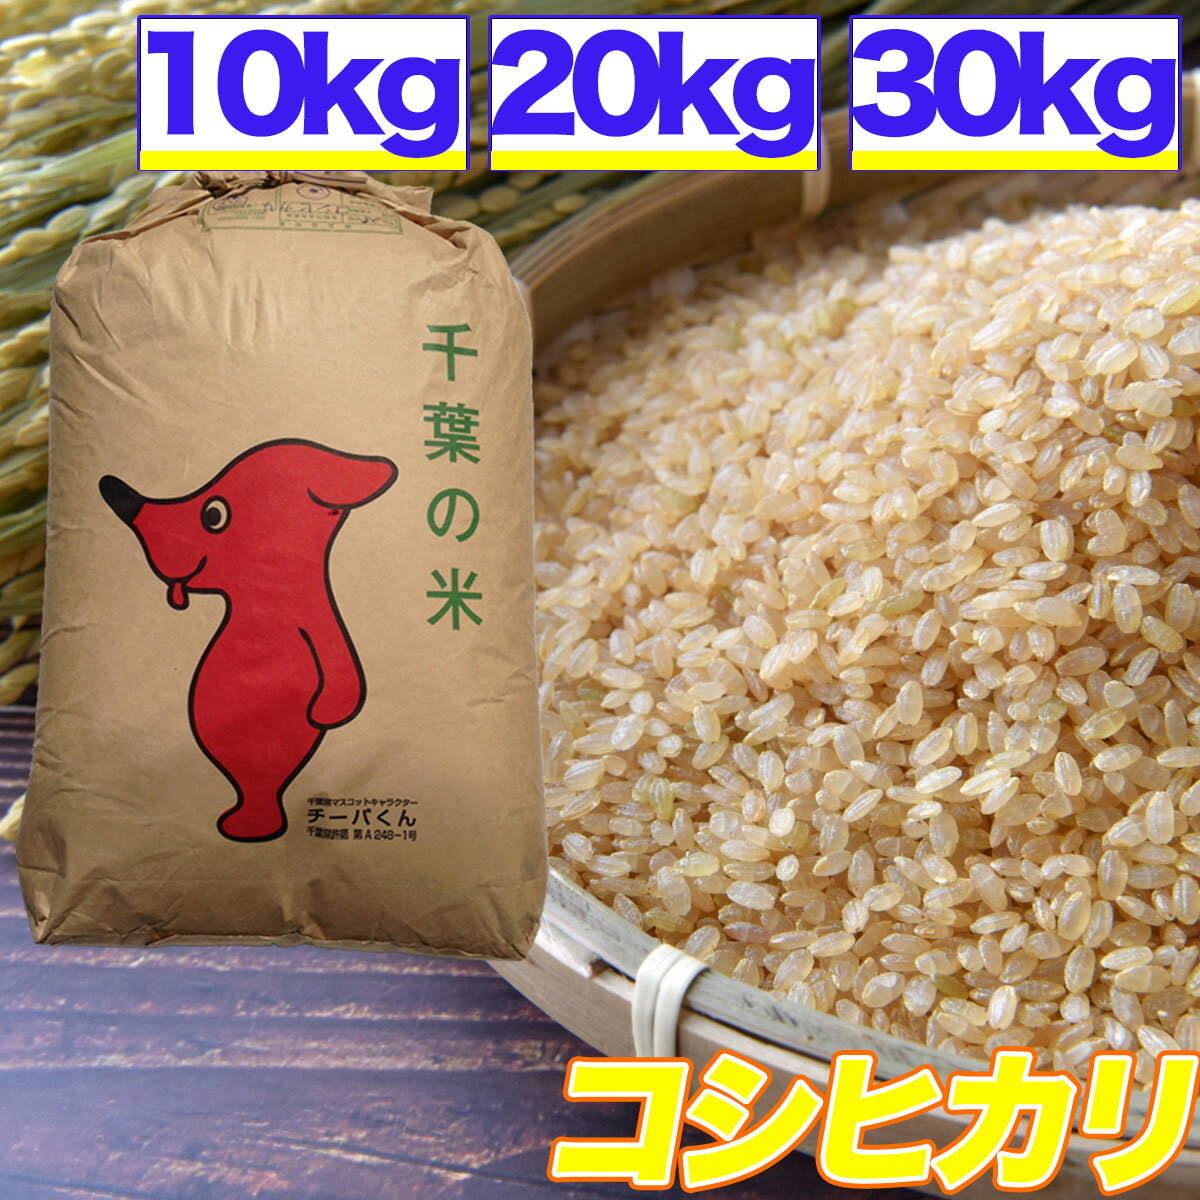 米 コシヒカリ 10kg 20kg 30kg 残留農薬